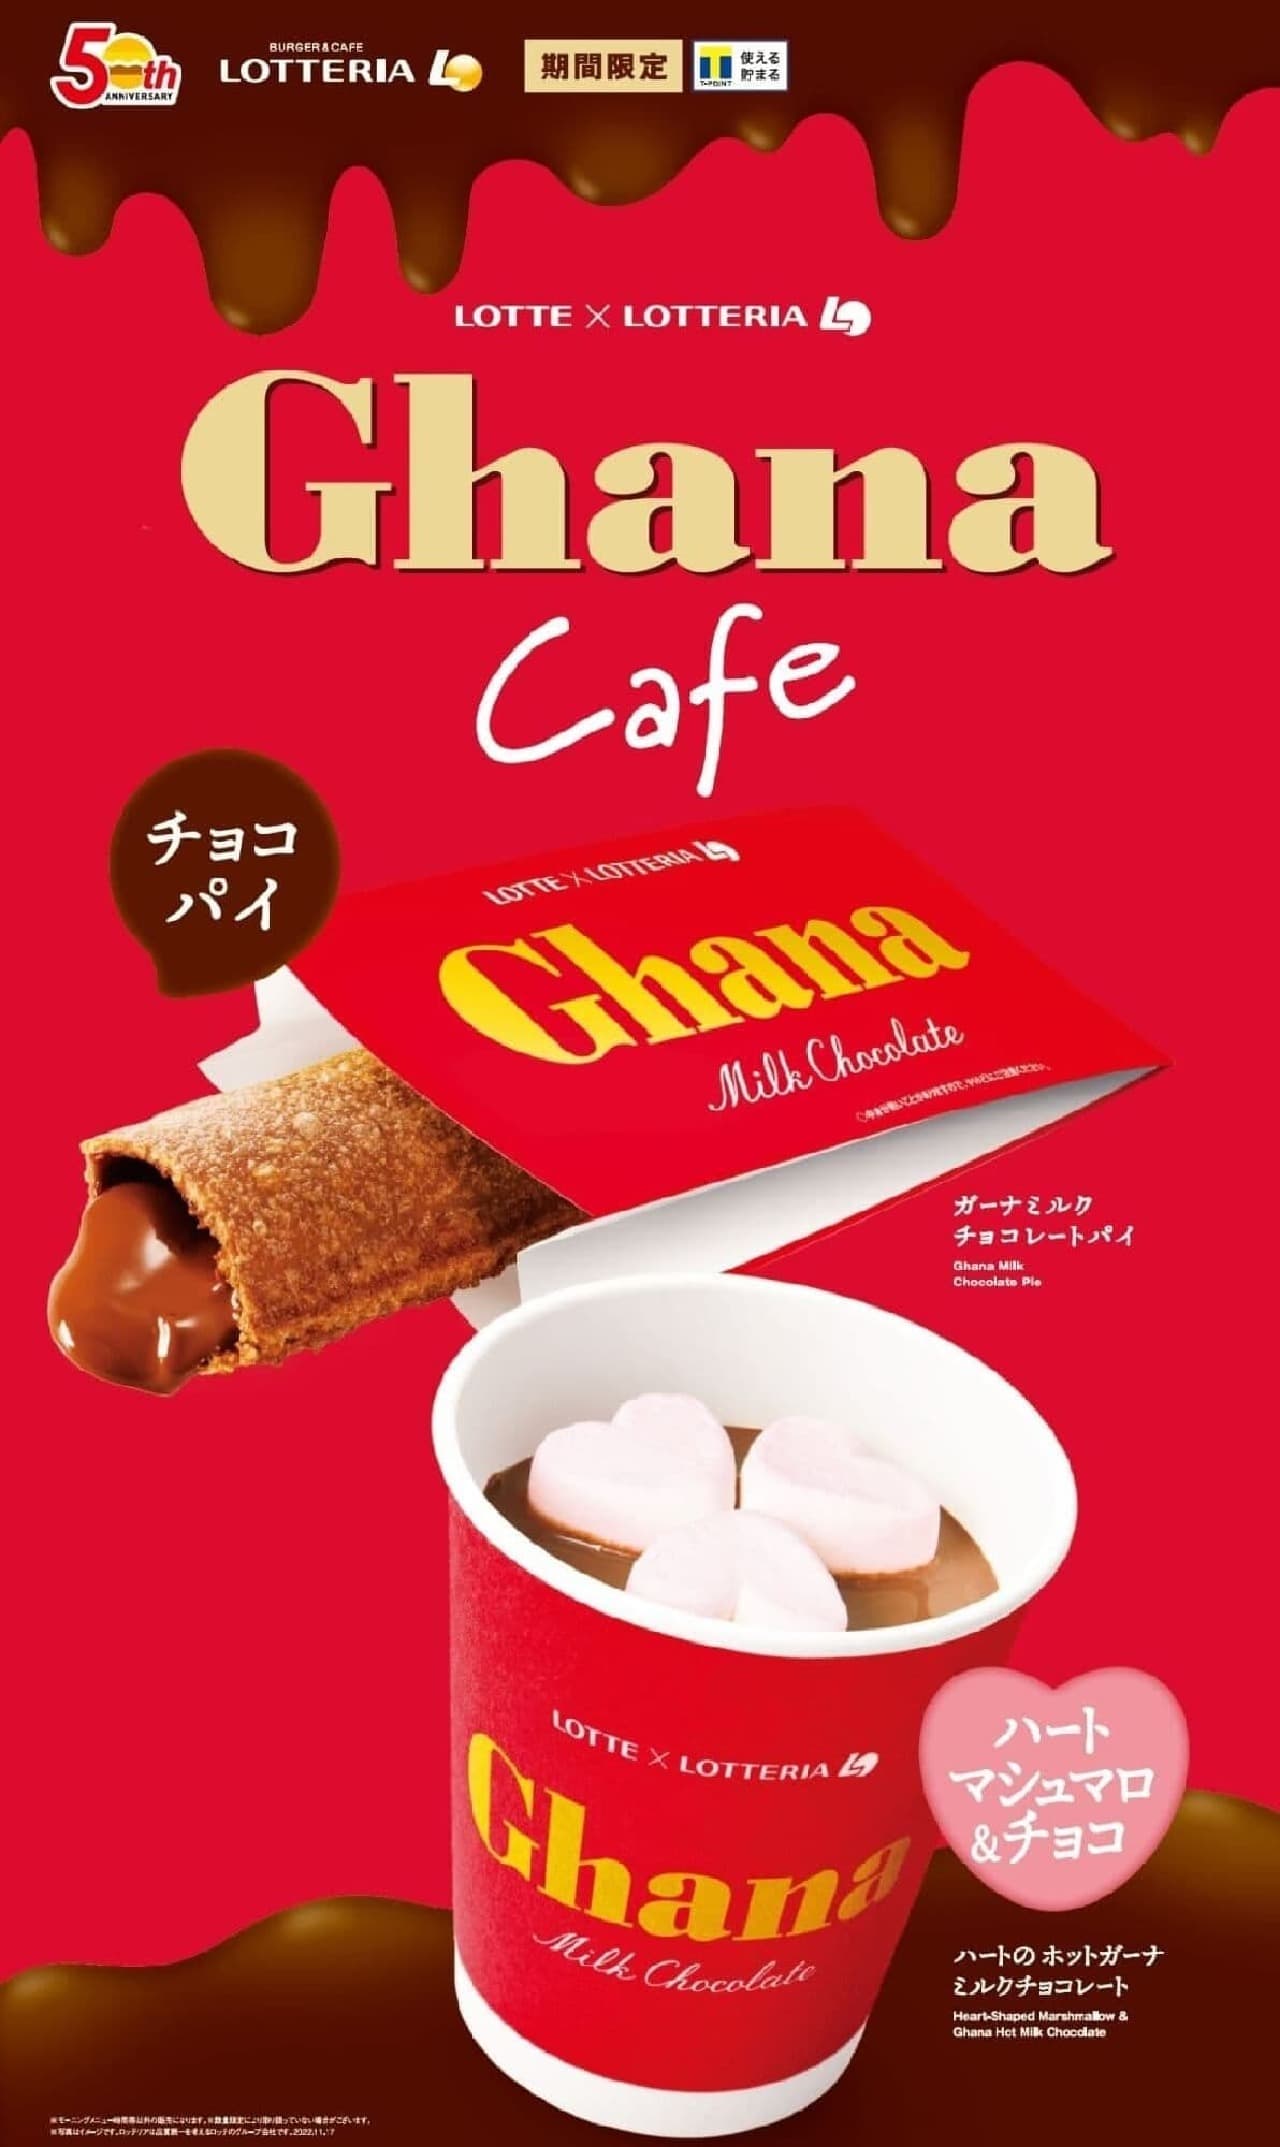 Lotteria "Ghana Cafe